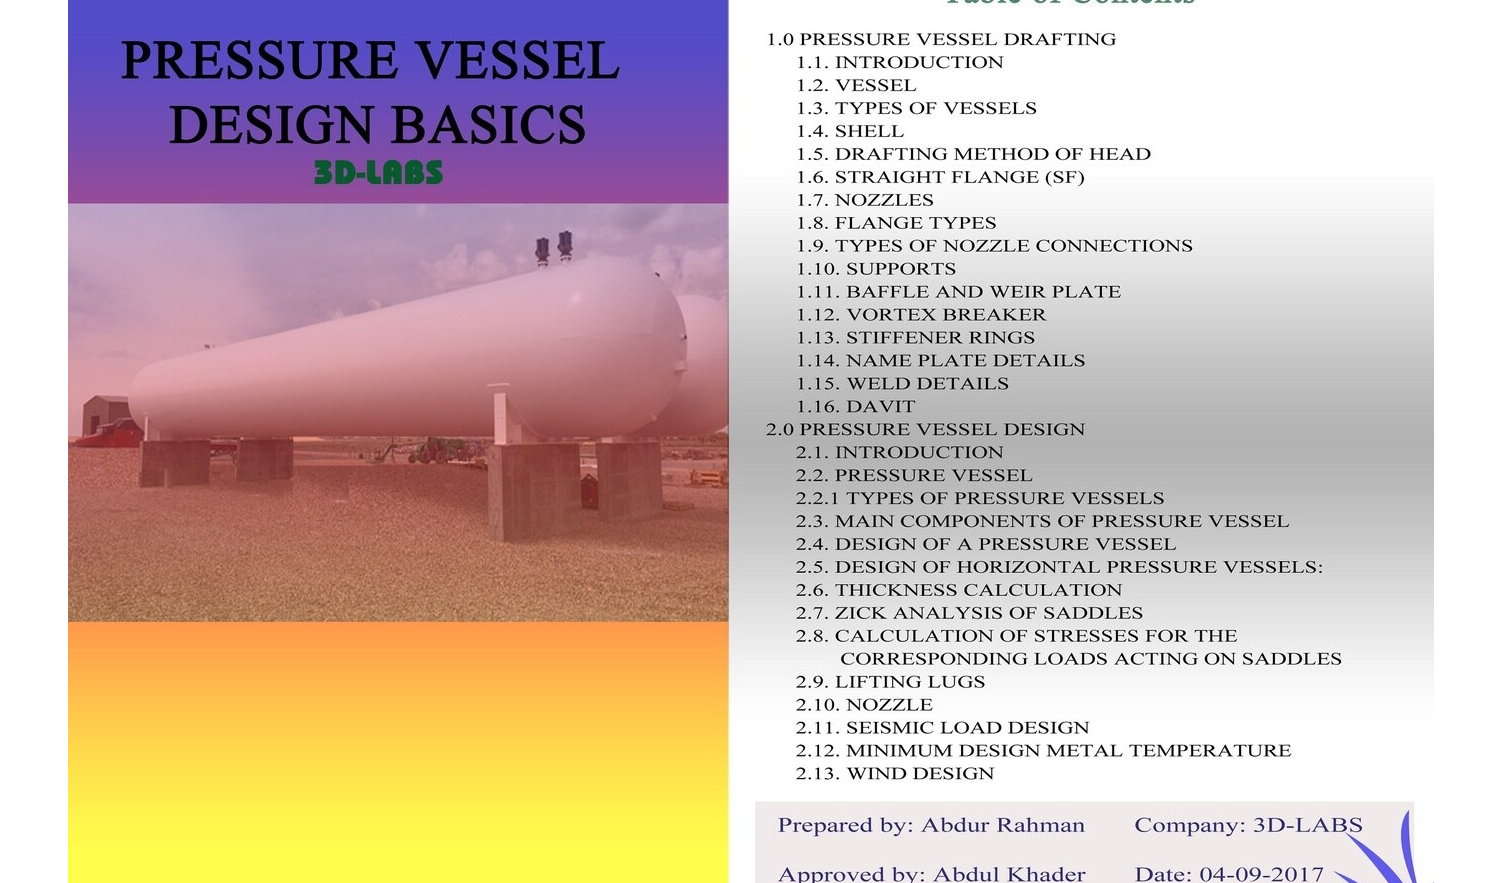 Pressure Vessel Design